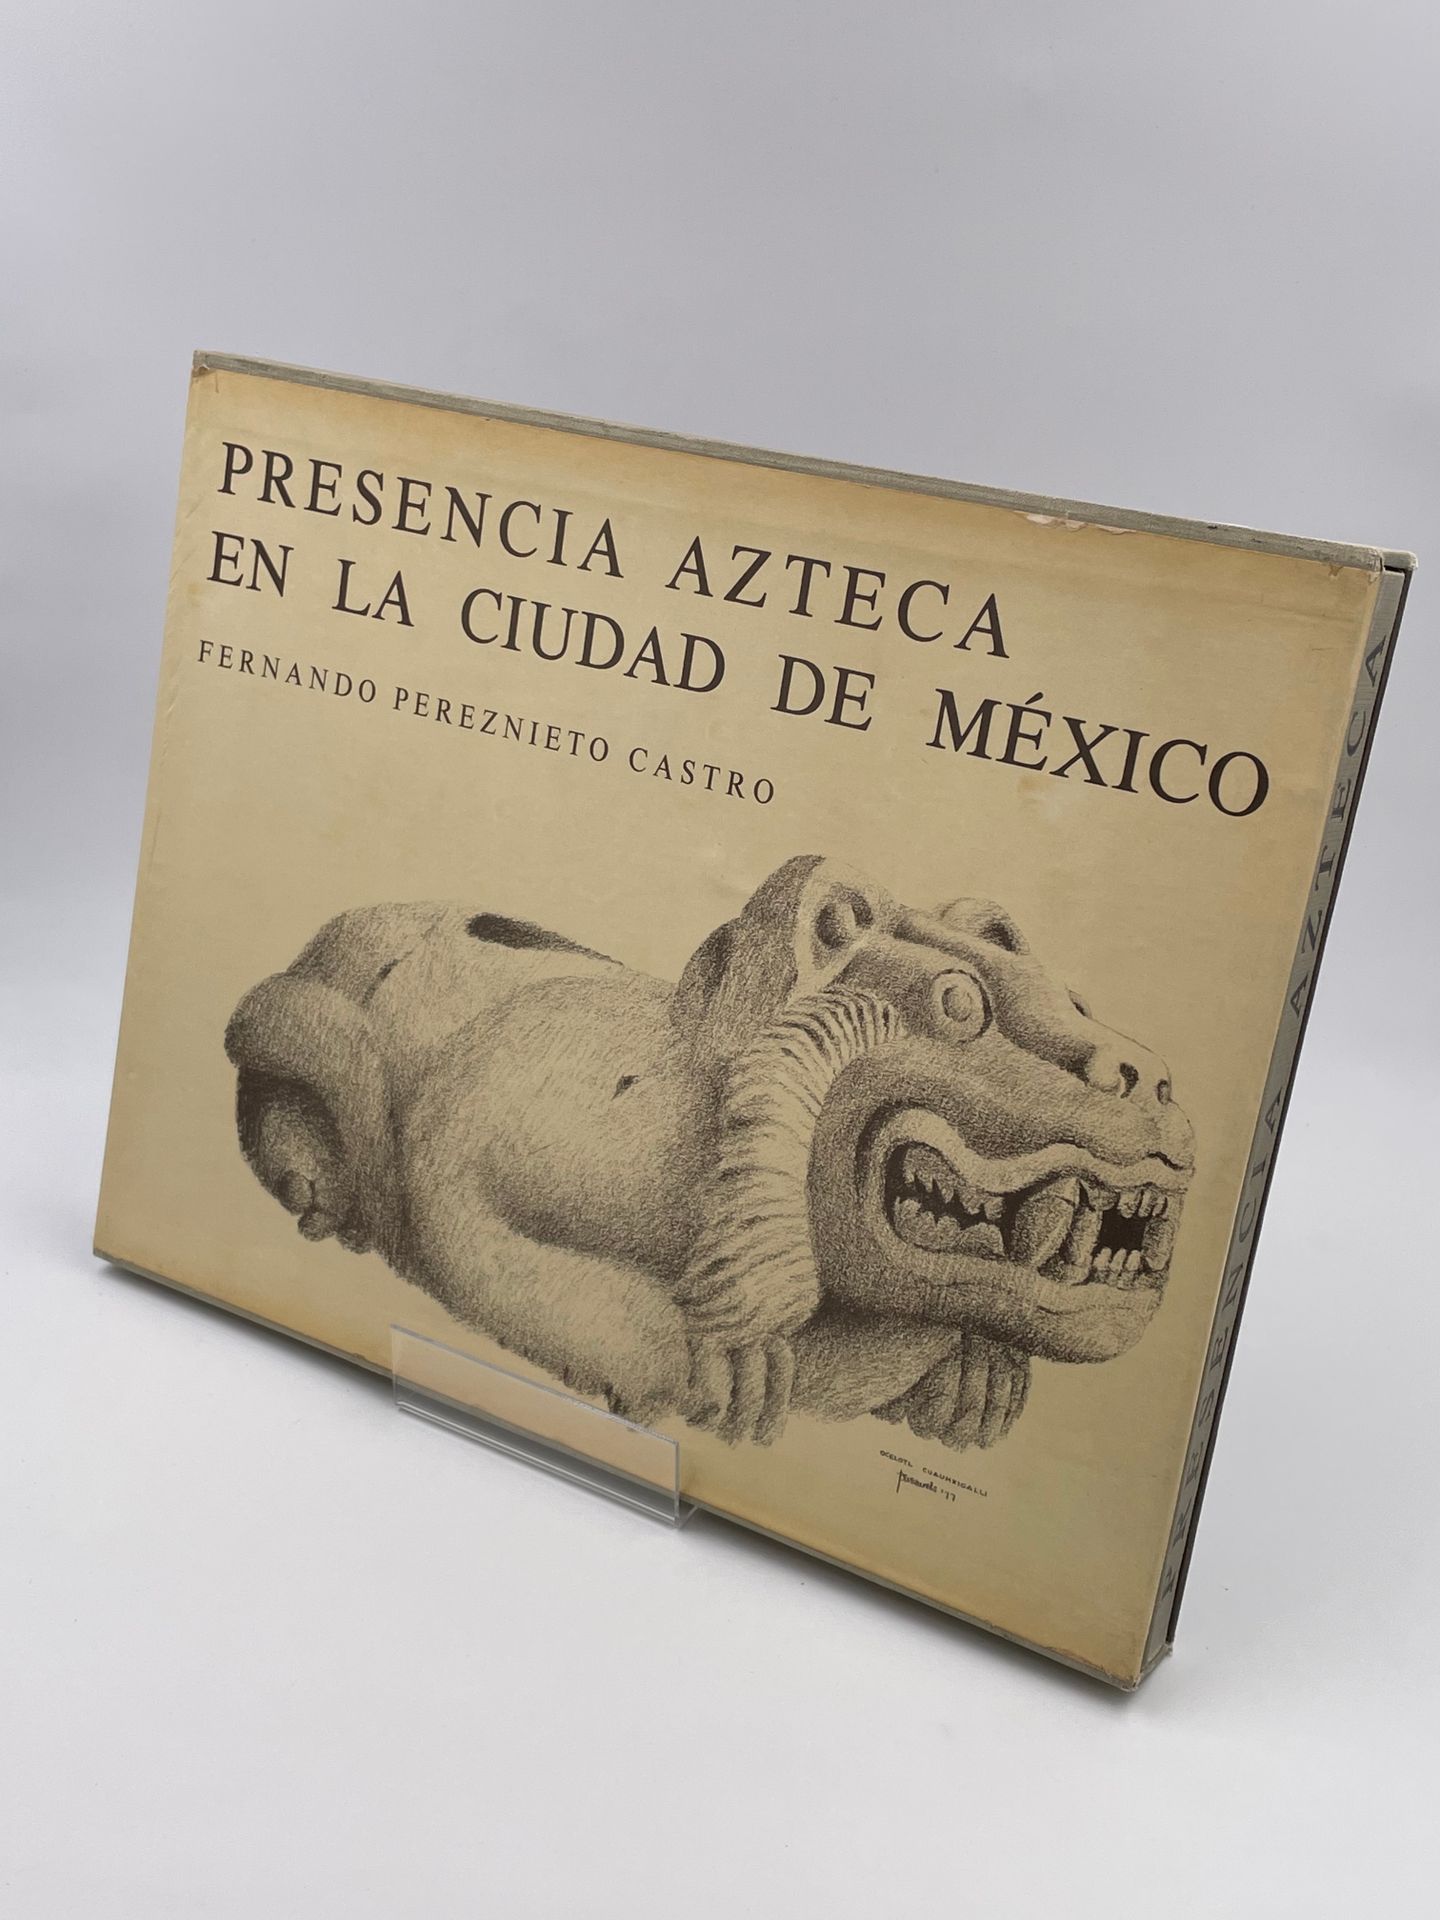 Null 1 Band: "PRESENCIA AZTECA EN LA CIUDAD DE MEXICO" Fernando Pereznieto Castr&hellip;